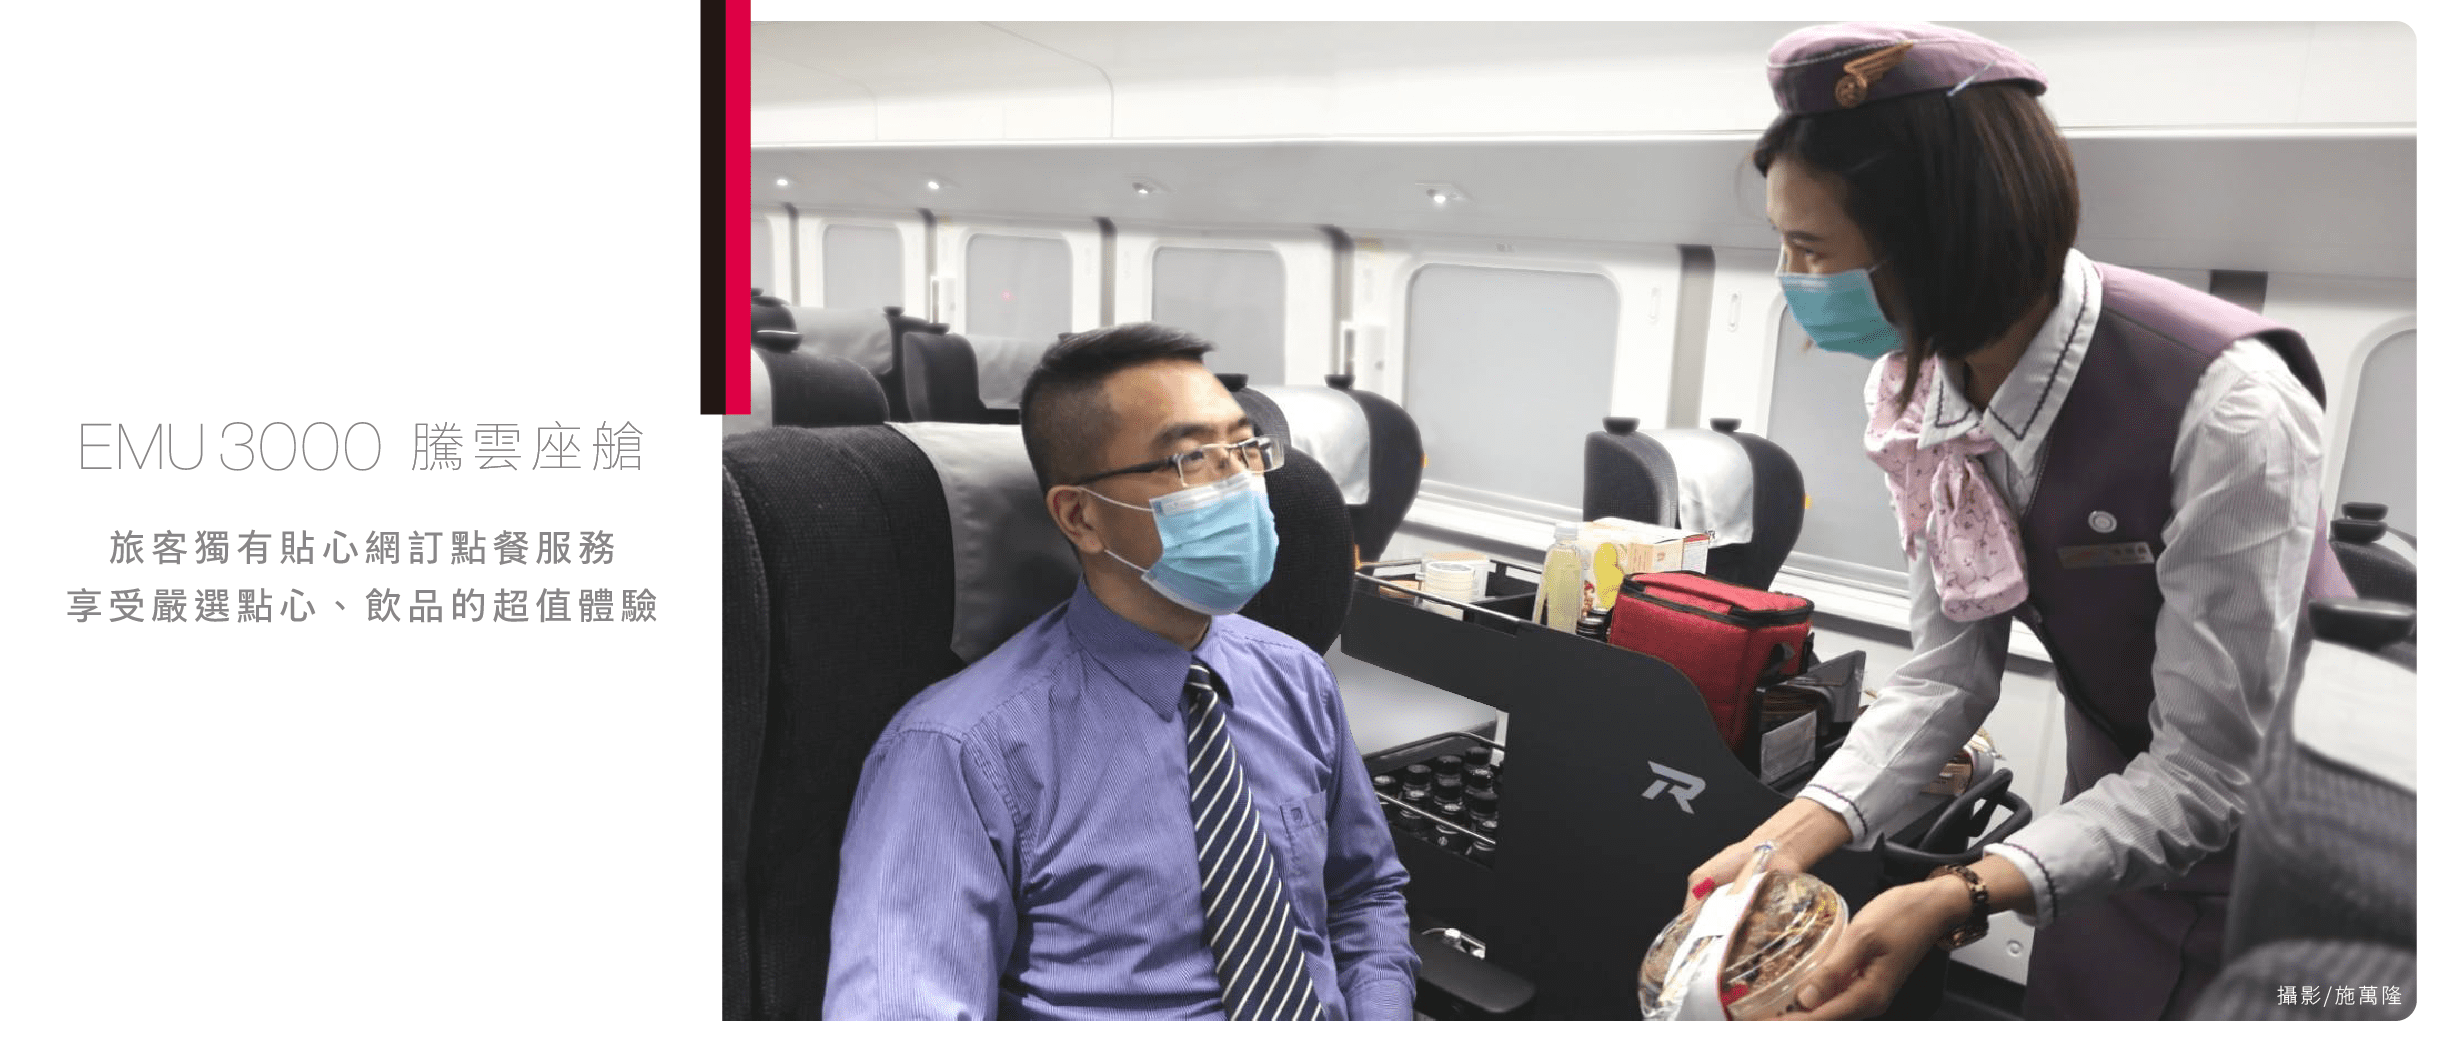 臺鐵「EMU3000型騰雲座艙」旅客獨有貼心網訂點餐服務 享受嚴選點心、飲品的超值體驗！